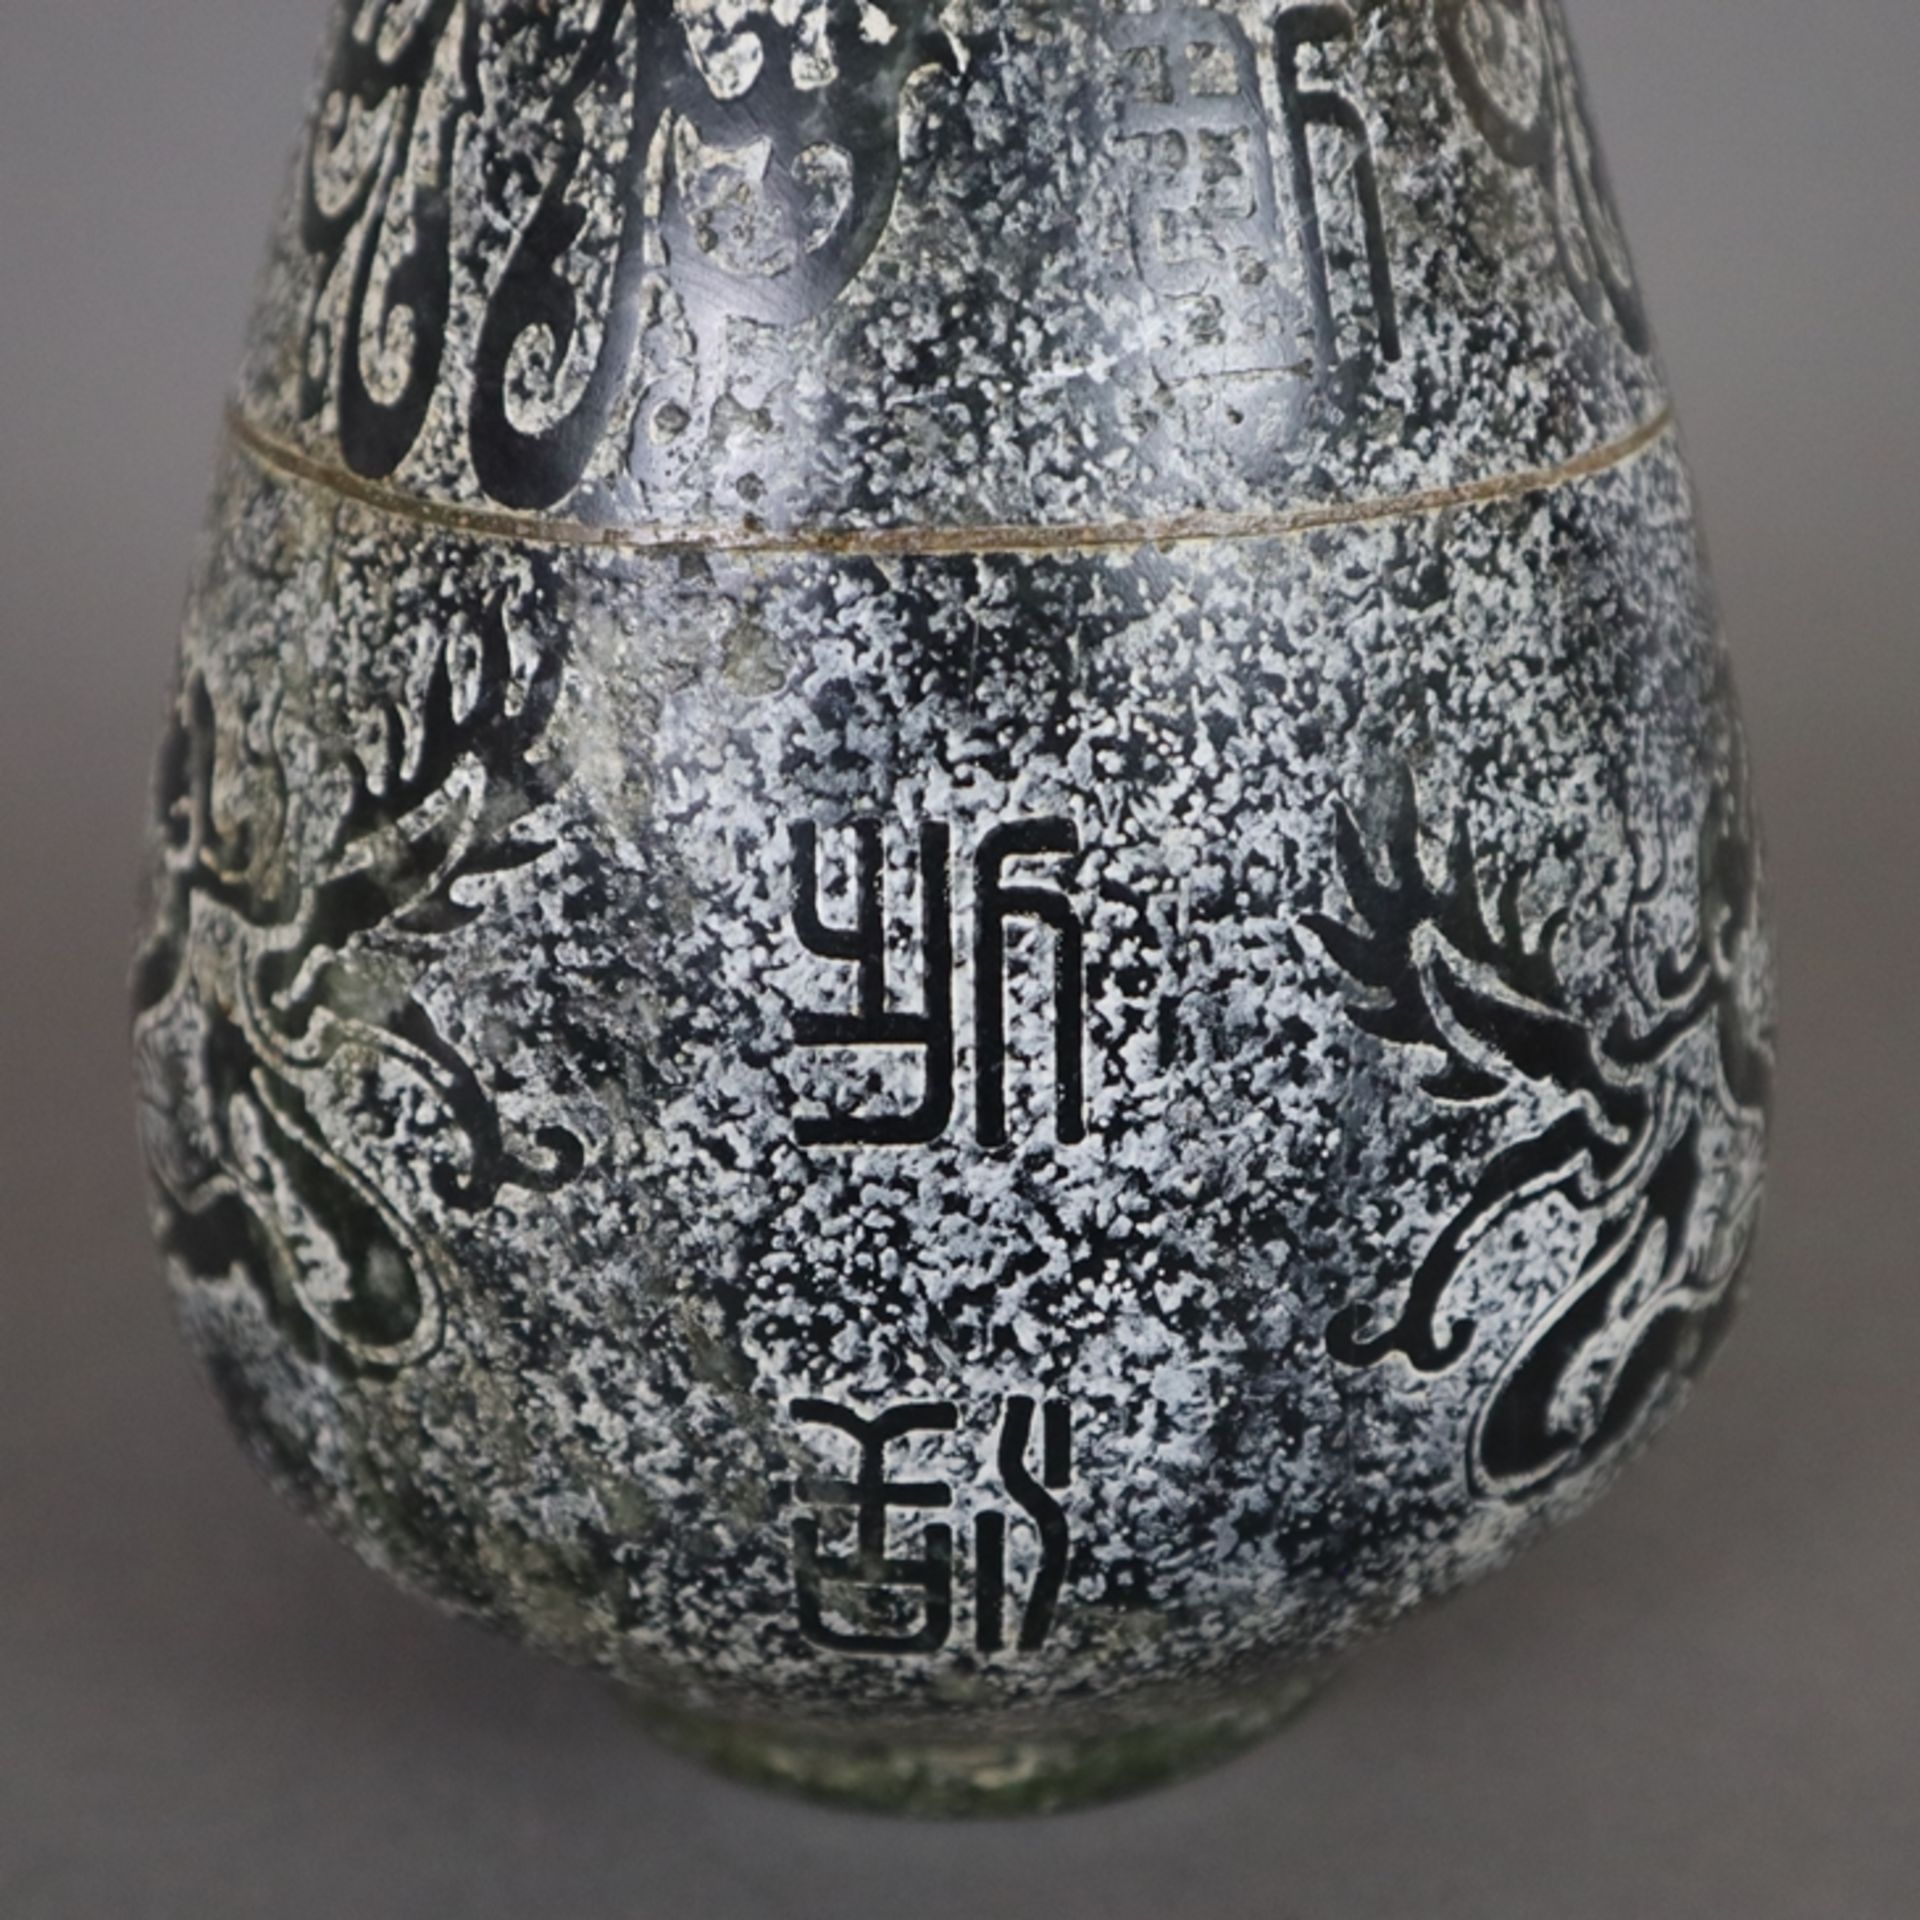 Steinvase - China, schlanker "Yu hu chun ping"-Typus, Kalkstein, teils poliert, dekoriert mit archa - Bild 8 aus 10